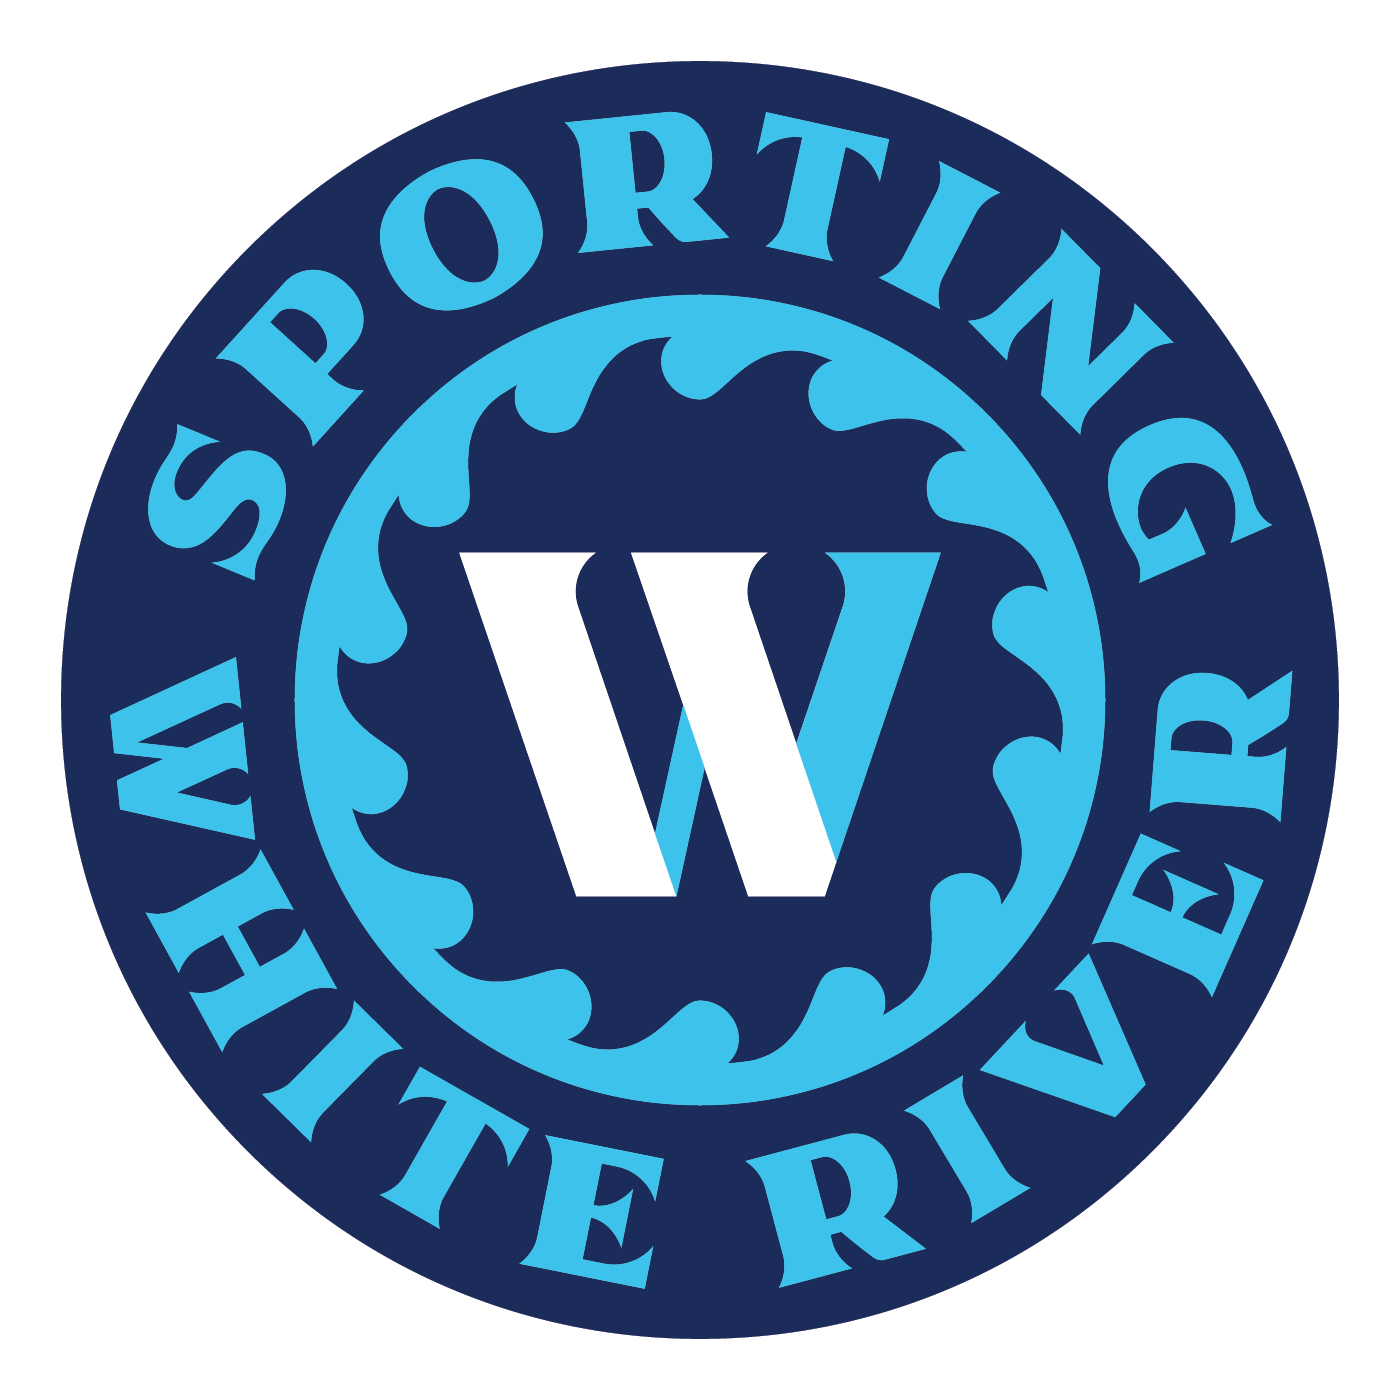 Sporting White River Team Sponsorships